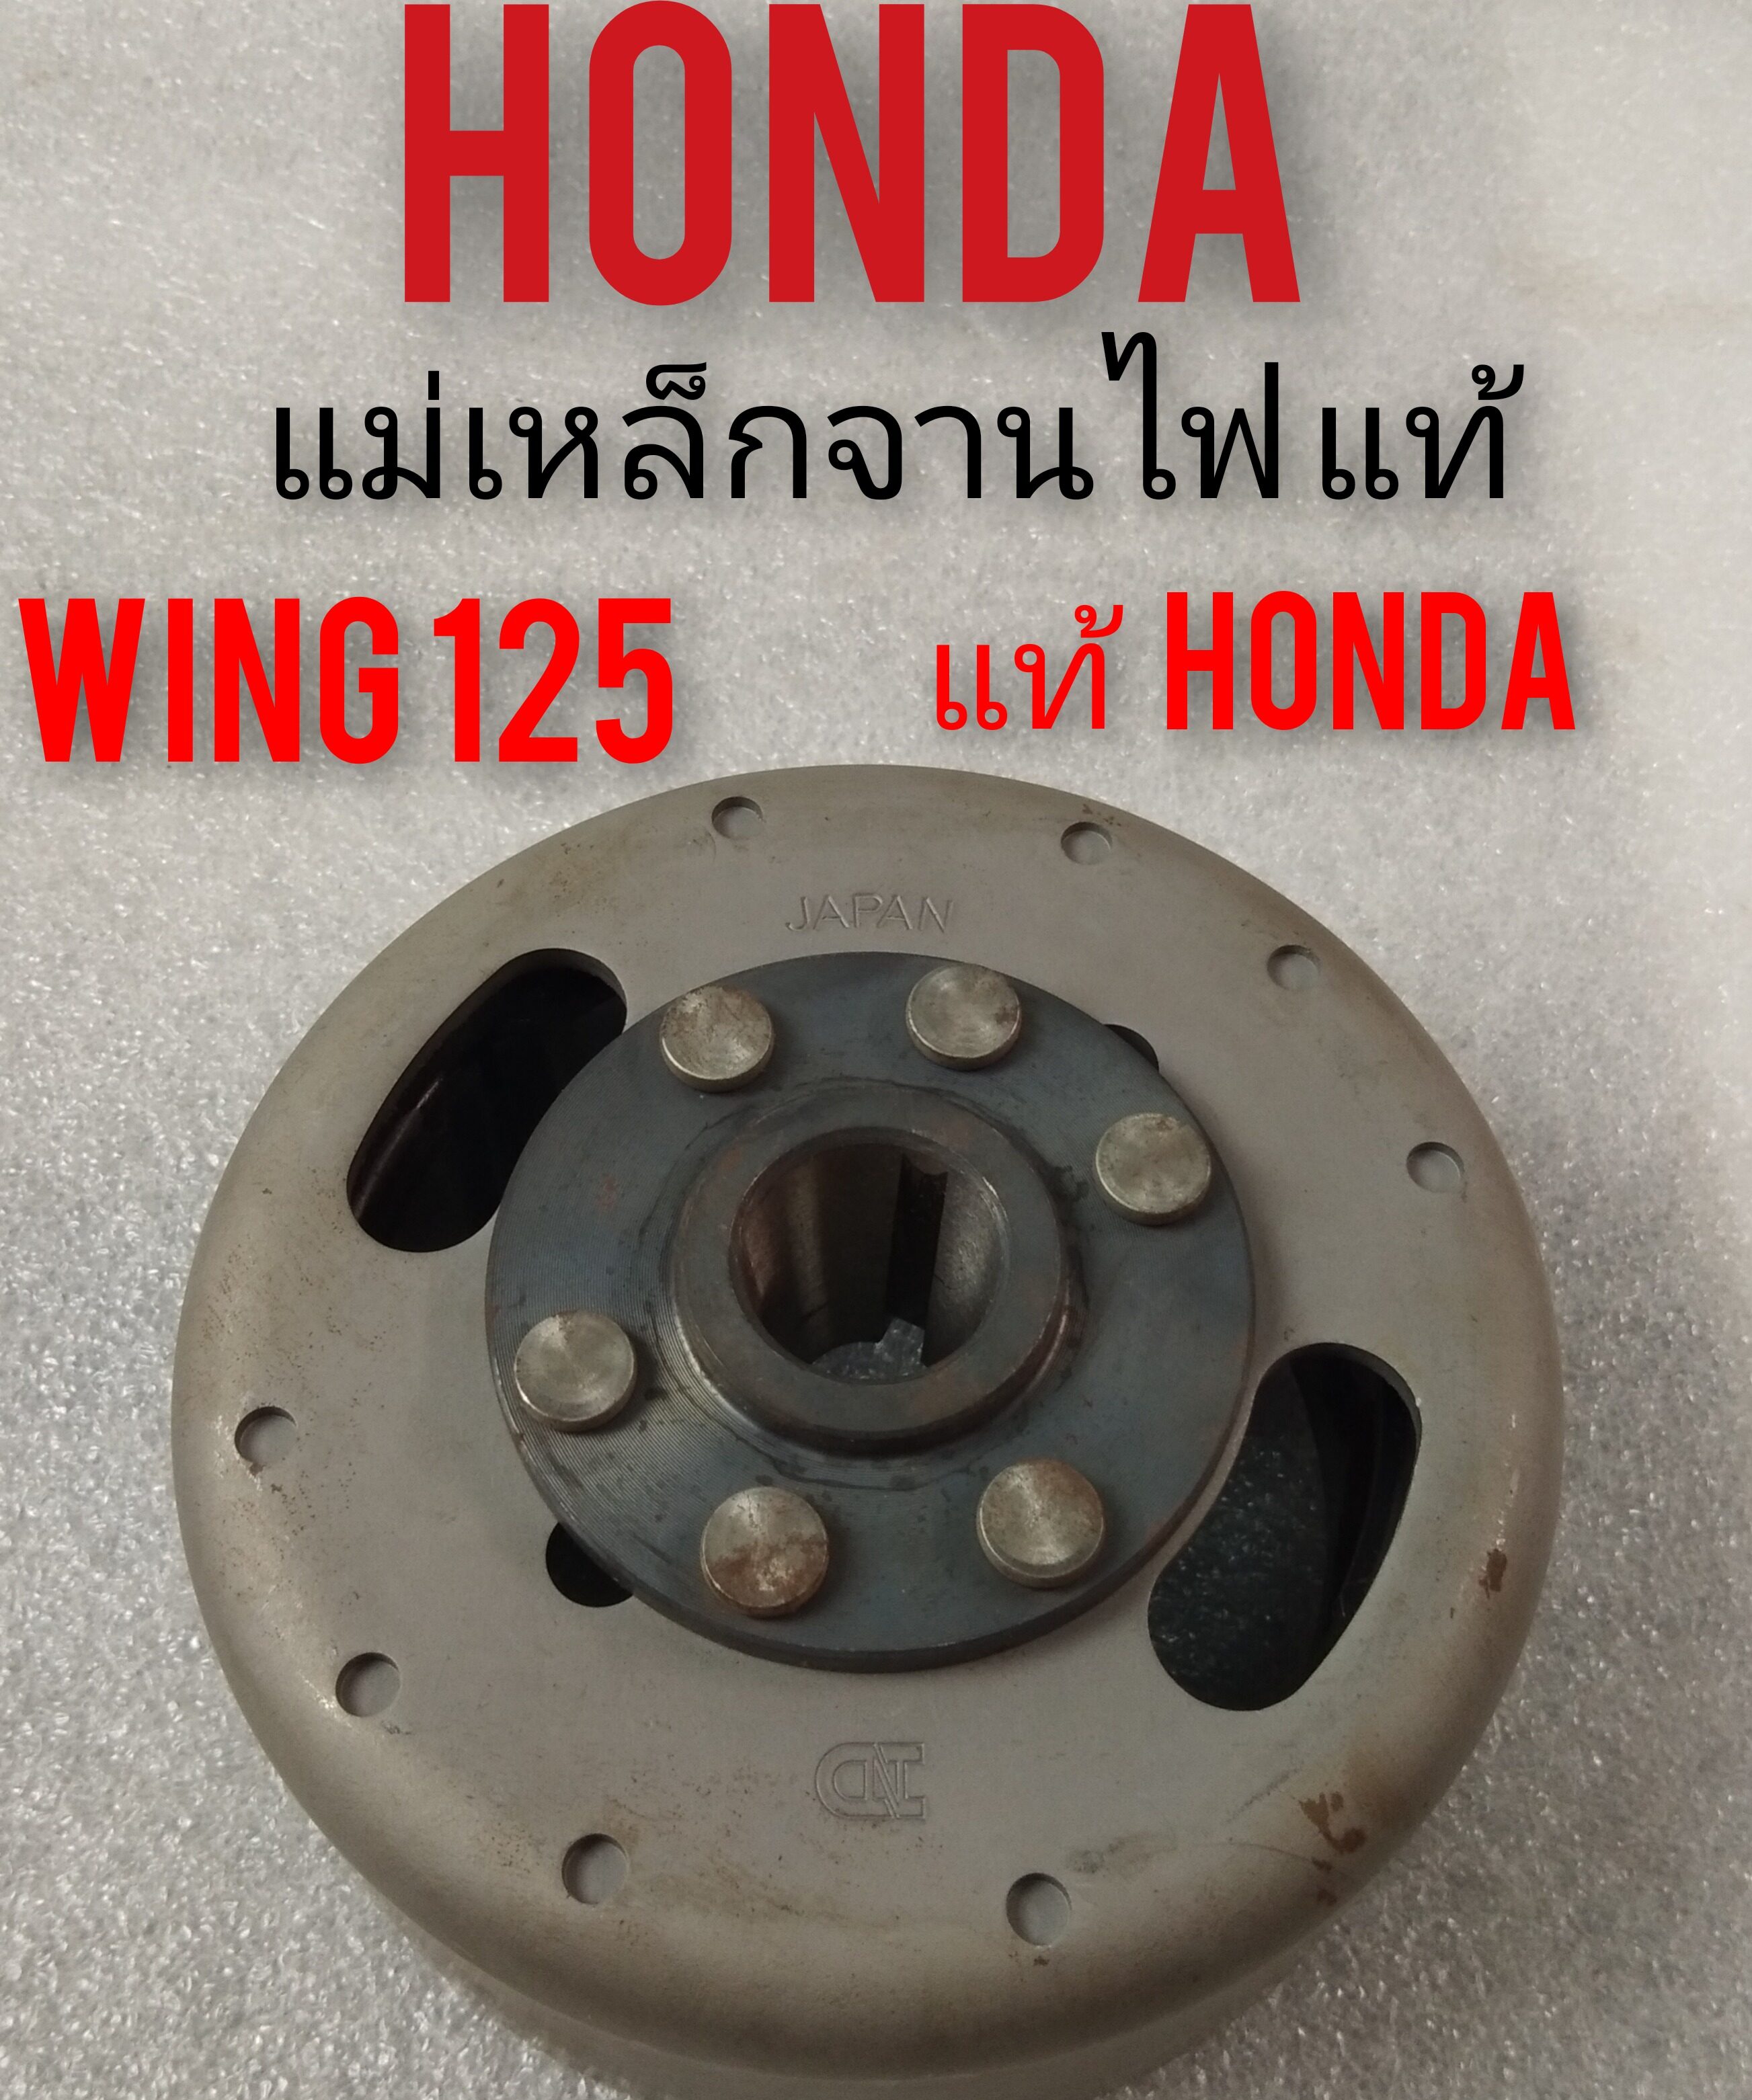 แม่เหล็กจานไฟ wing125 แม่เหล็กจานไฟ honda wing125 แท้ศูนย์ honda